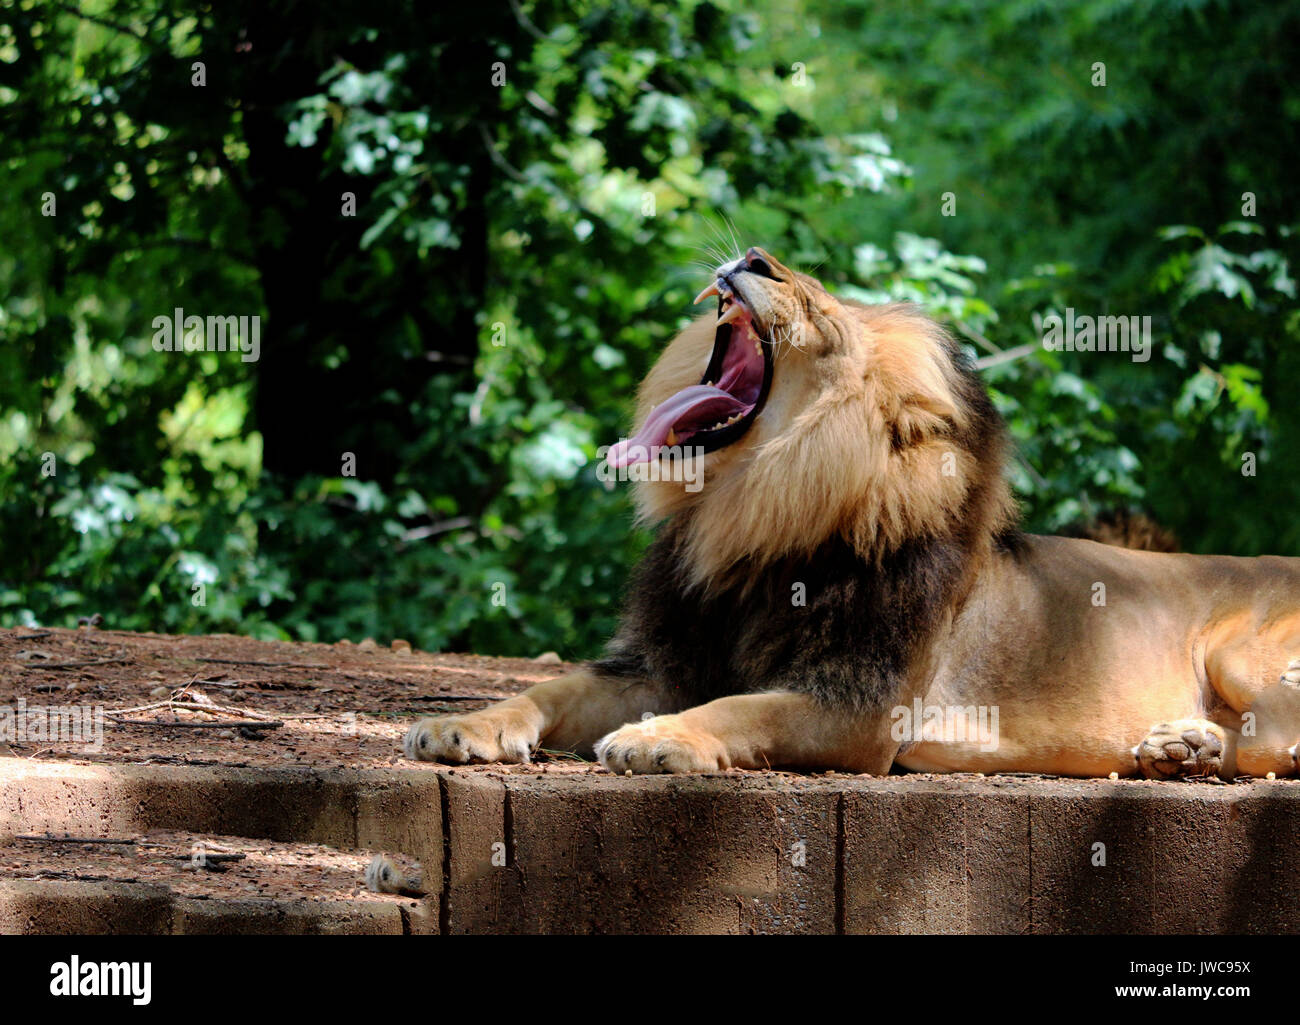 Un lion le bâillement se détendre dans son habitat avec un fond vert. Banque D'Images